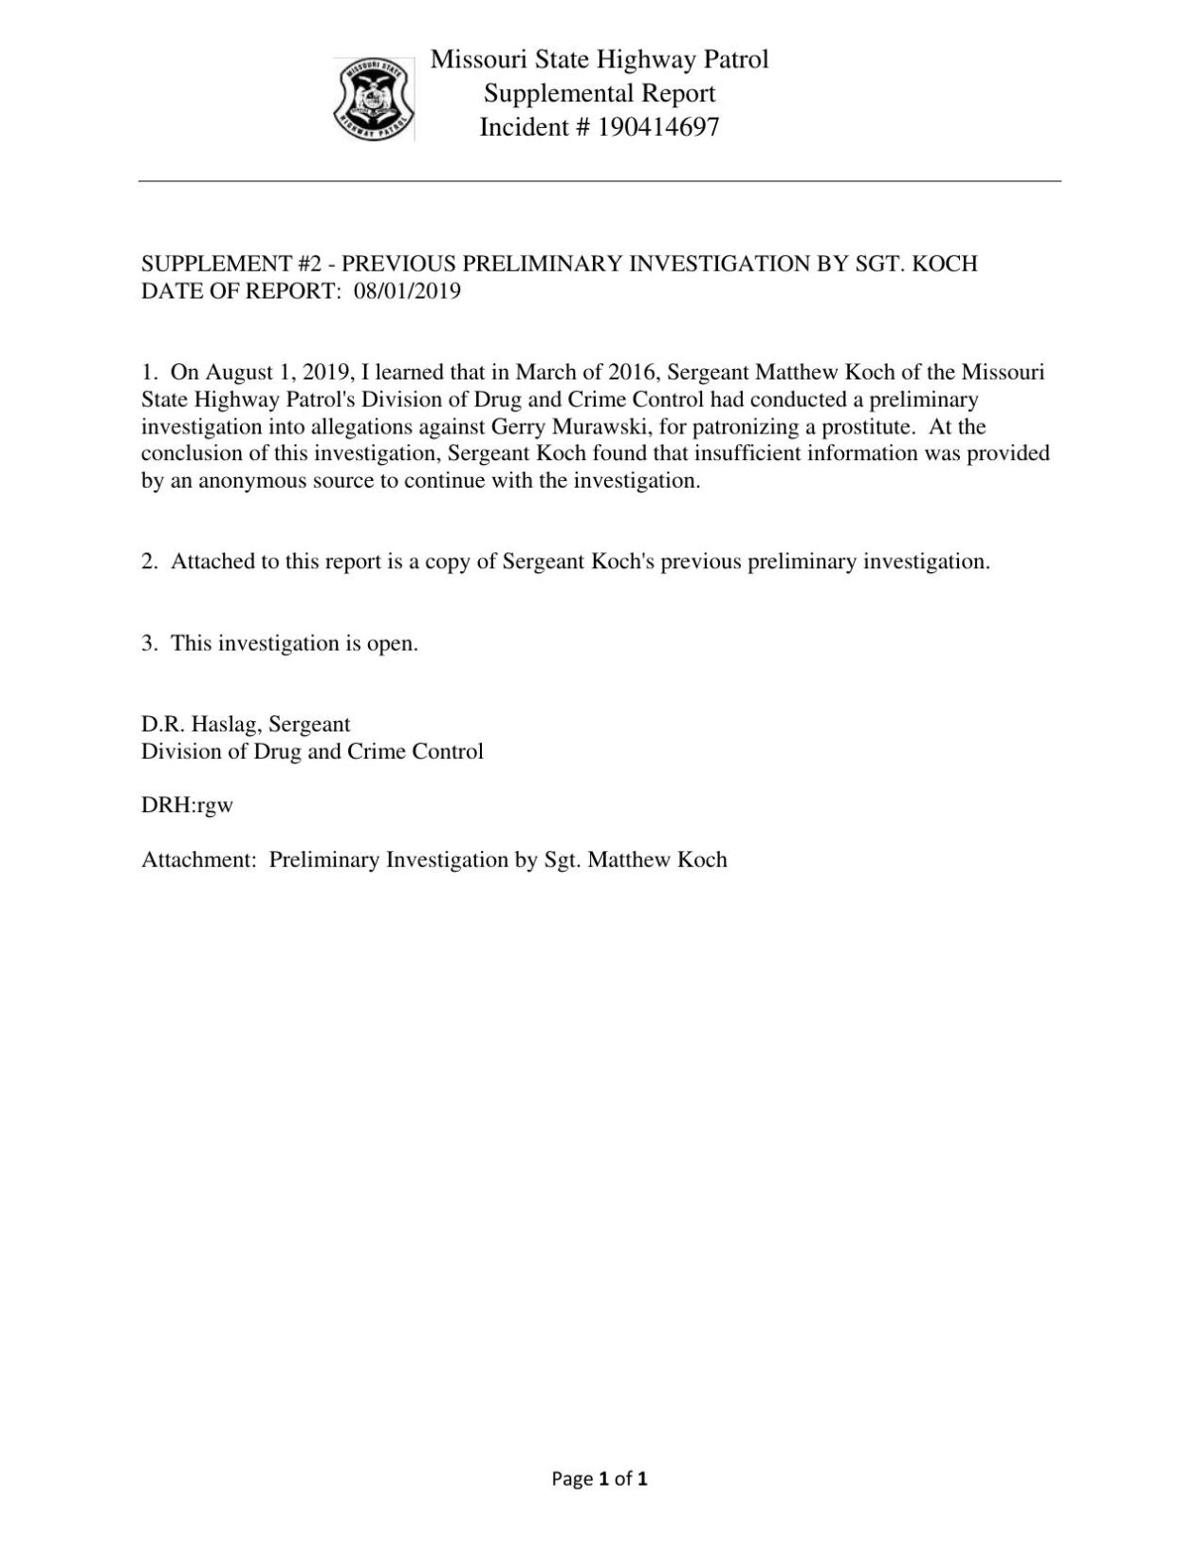 Murawski Investigation Doc 2-0 - 2019 Note of 2016 Preliminary Inquiry